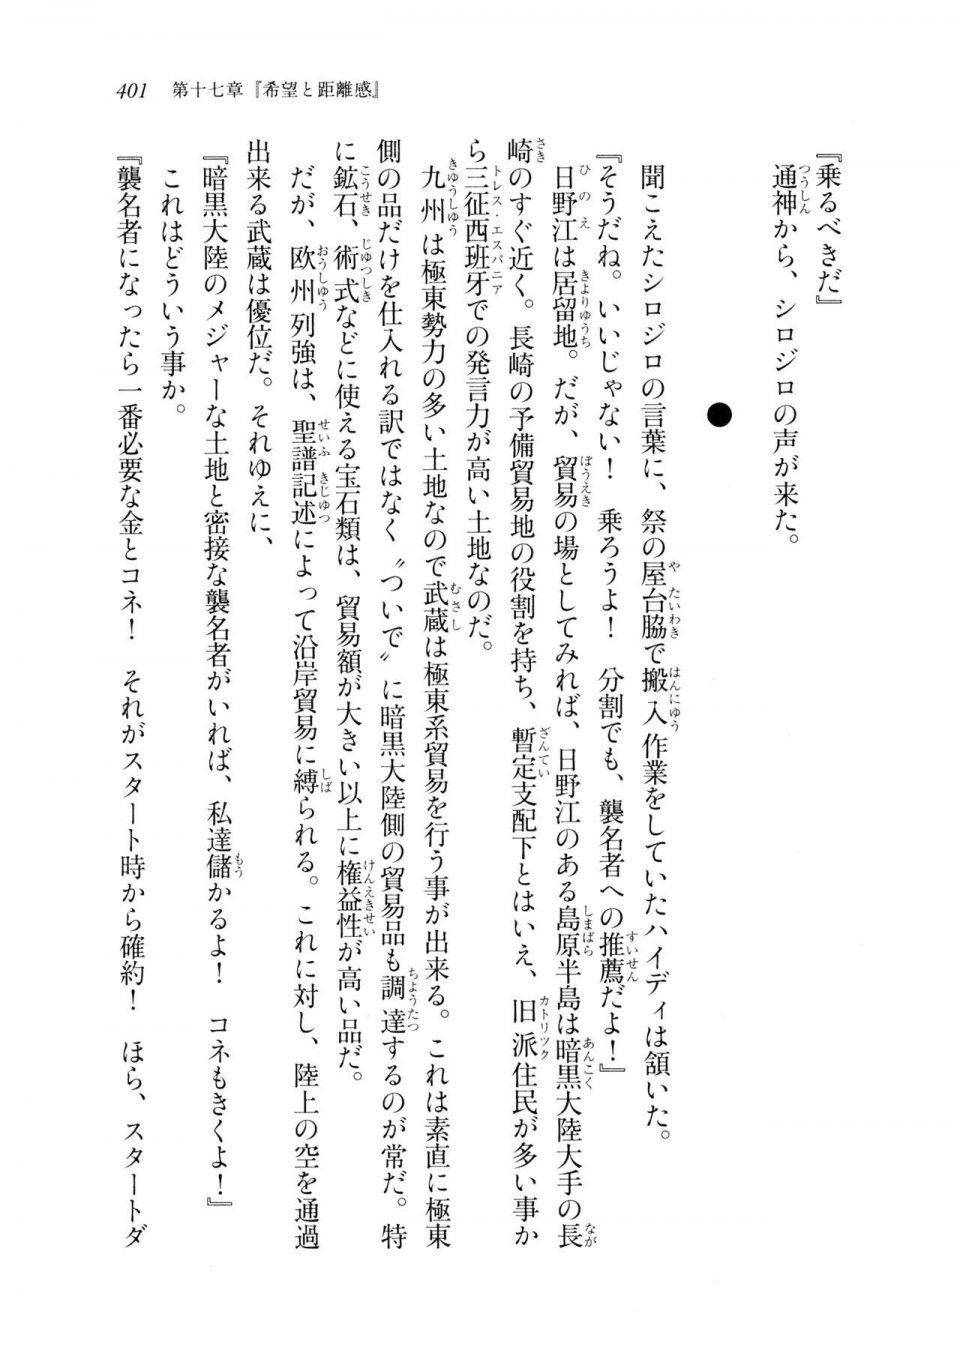 Kyoukai Senjou no Horizon LN Sidestory Vol 2 - Photo #399